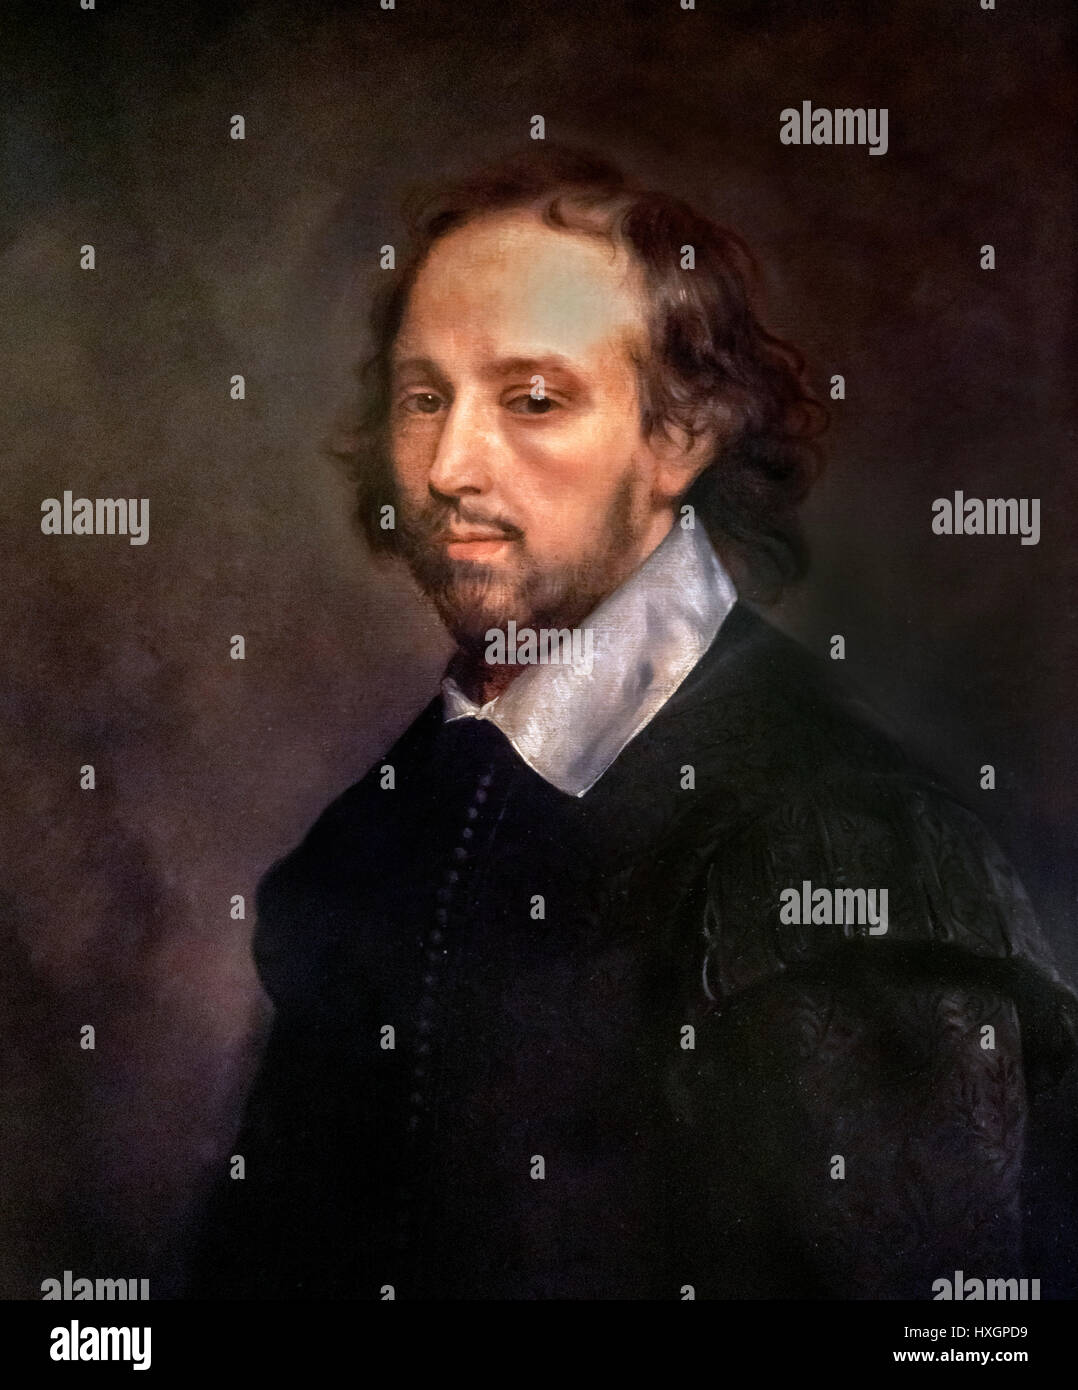 Porträt von William Shakespeare von Gerard Soest. Reproduktion eines c.1667 Gemäldes erfolgte nach Shakespeares Tod und basiert wahrscheinlich auf die bekannteren "Chandos" Porträt. Stockfoto